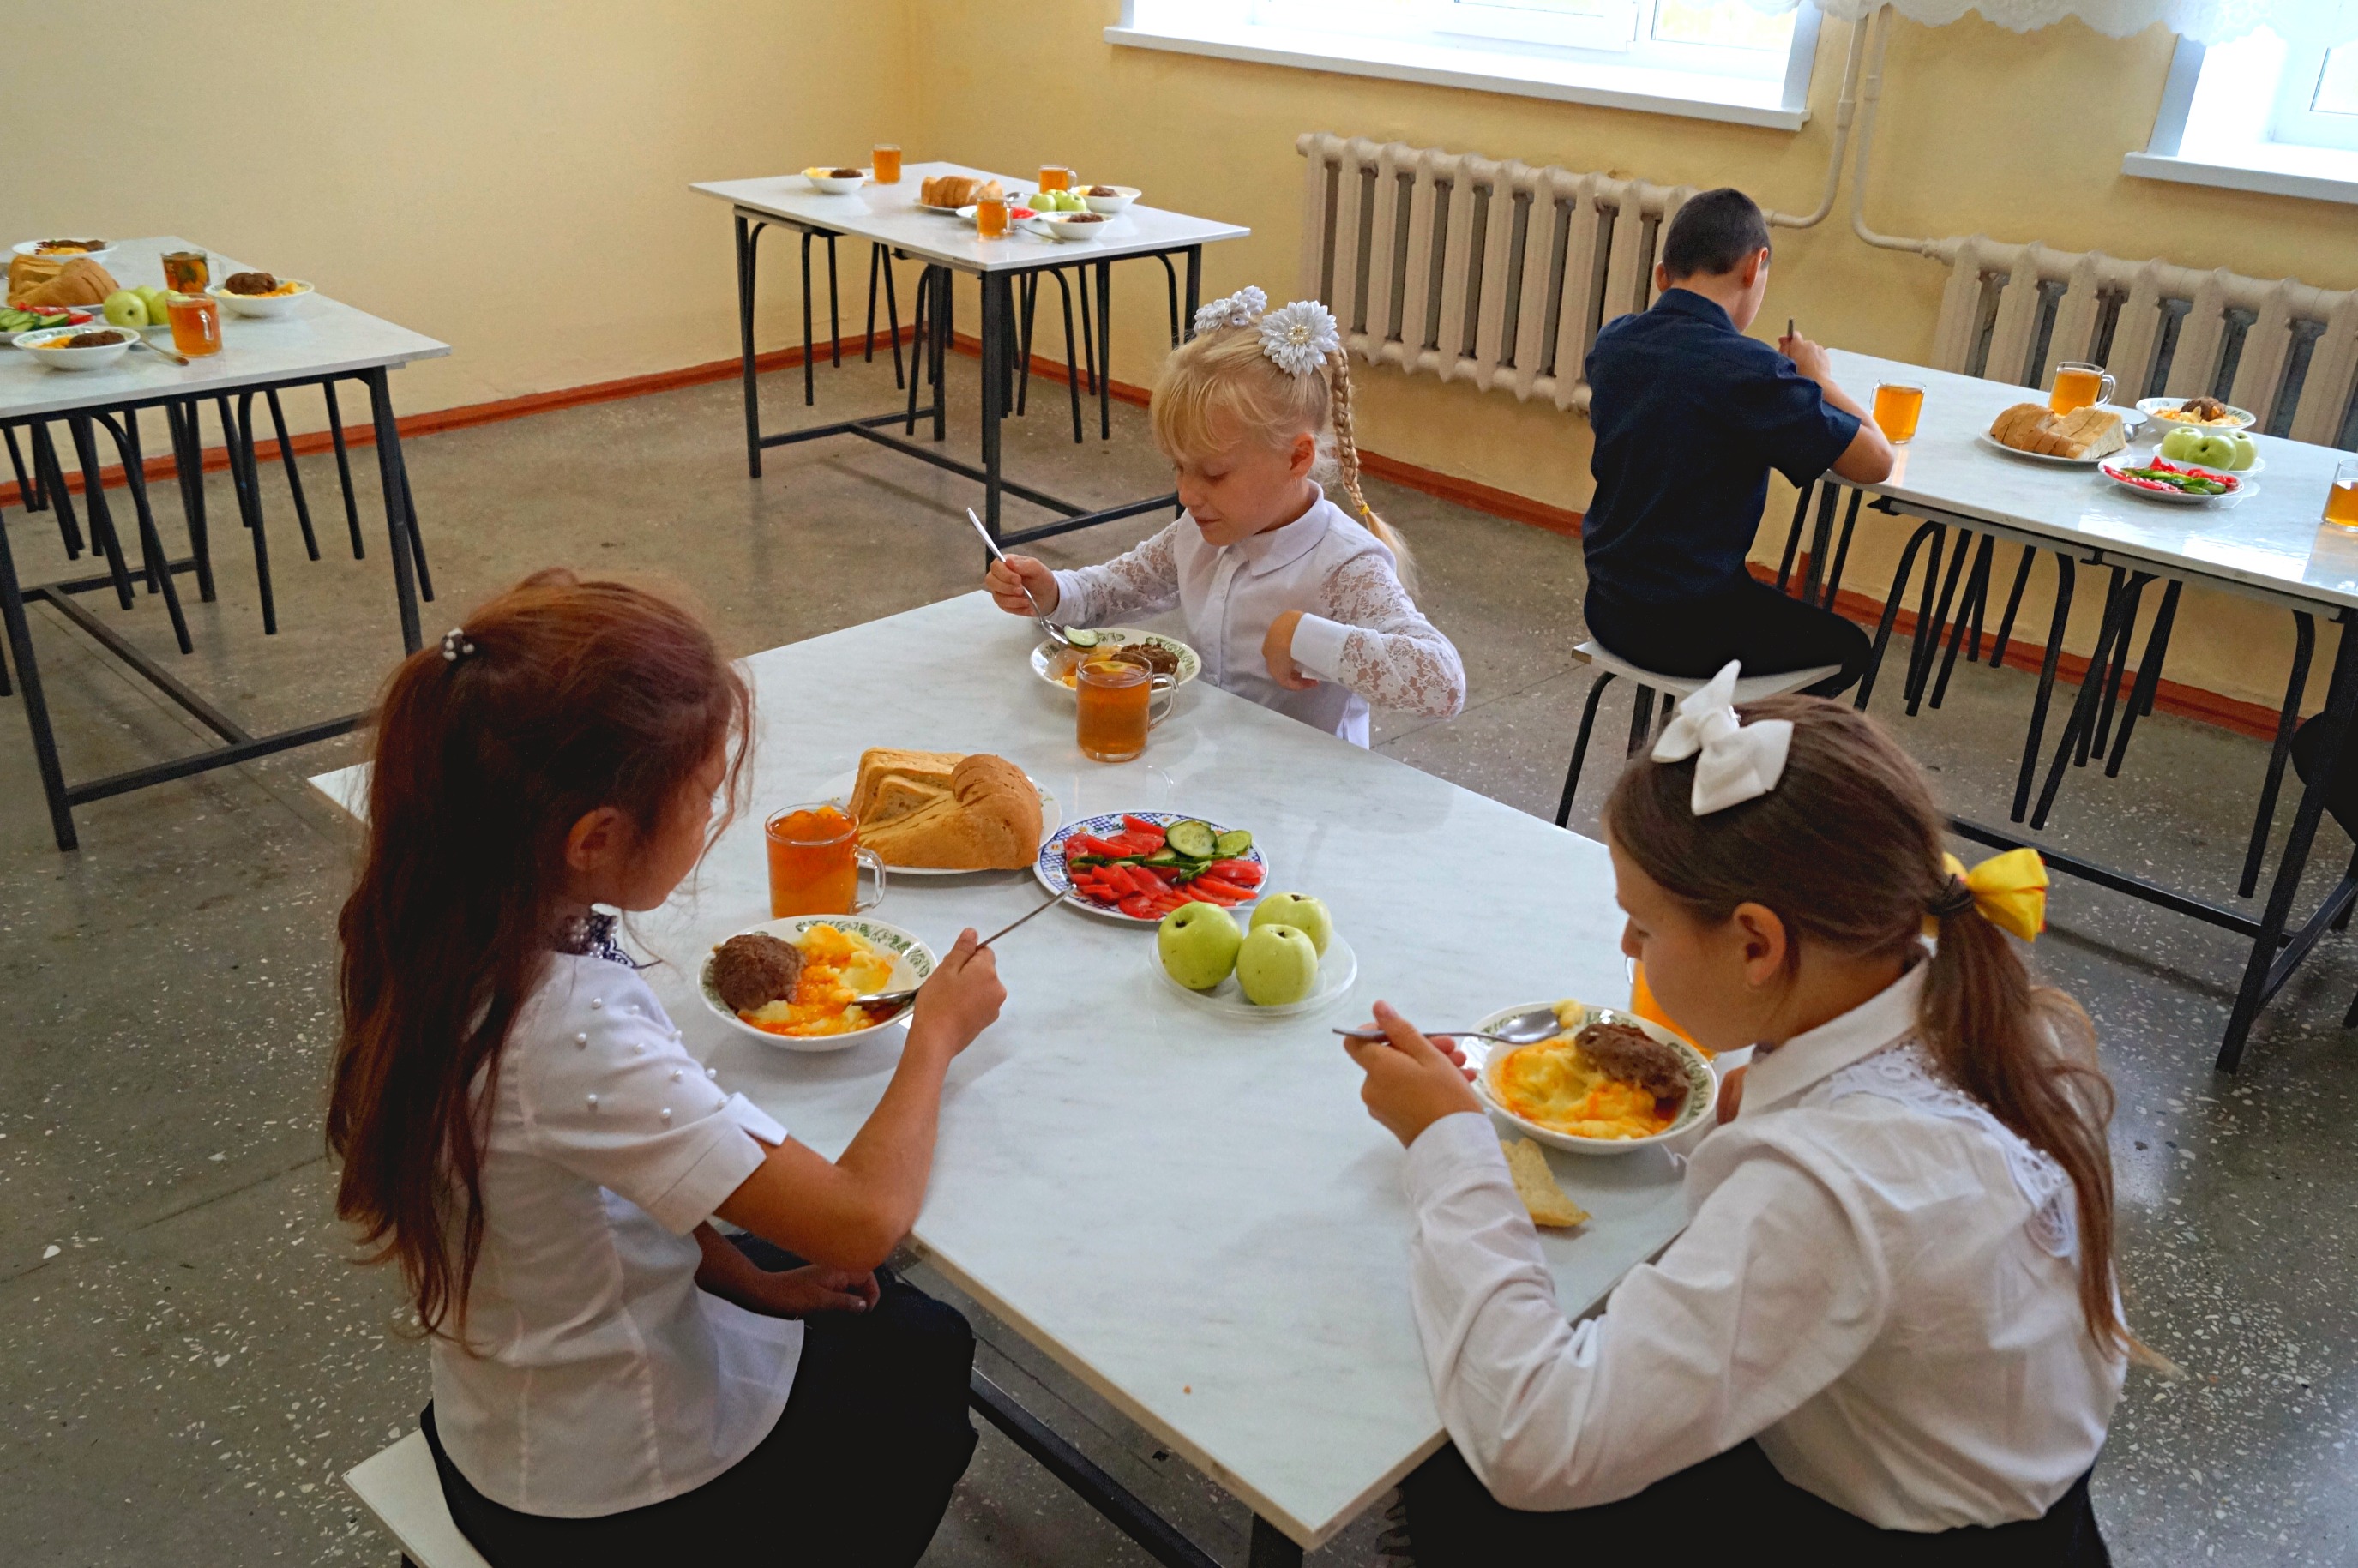 Ребенок овз питание в школе. Школьные столовые. Столовая в школе. Школьный обед. Еда в школьной столовой.